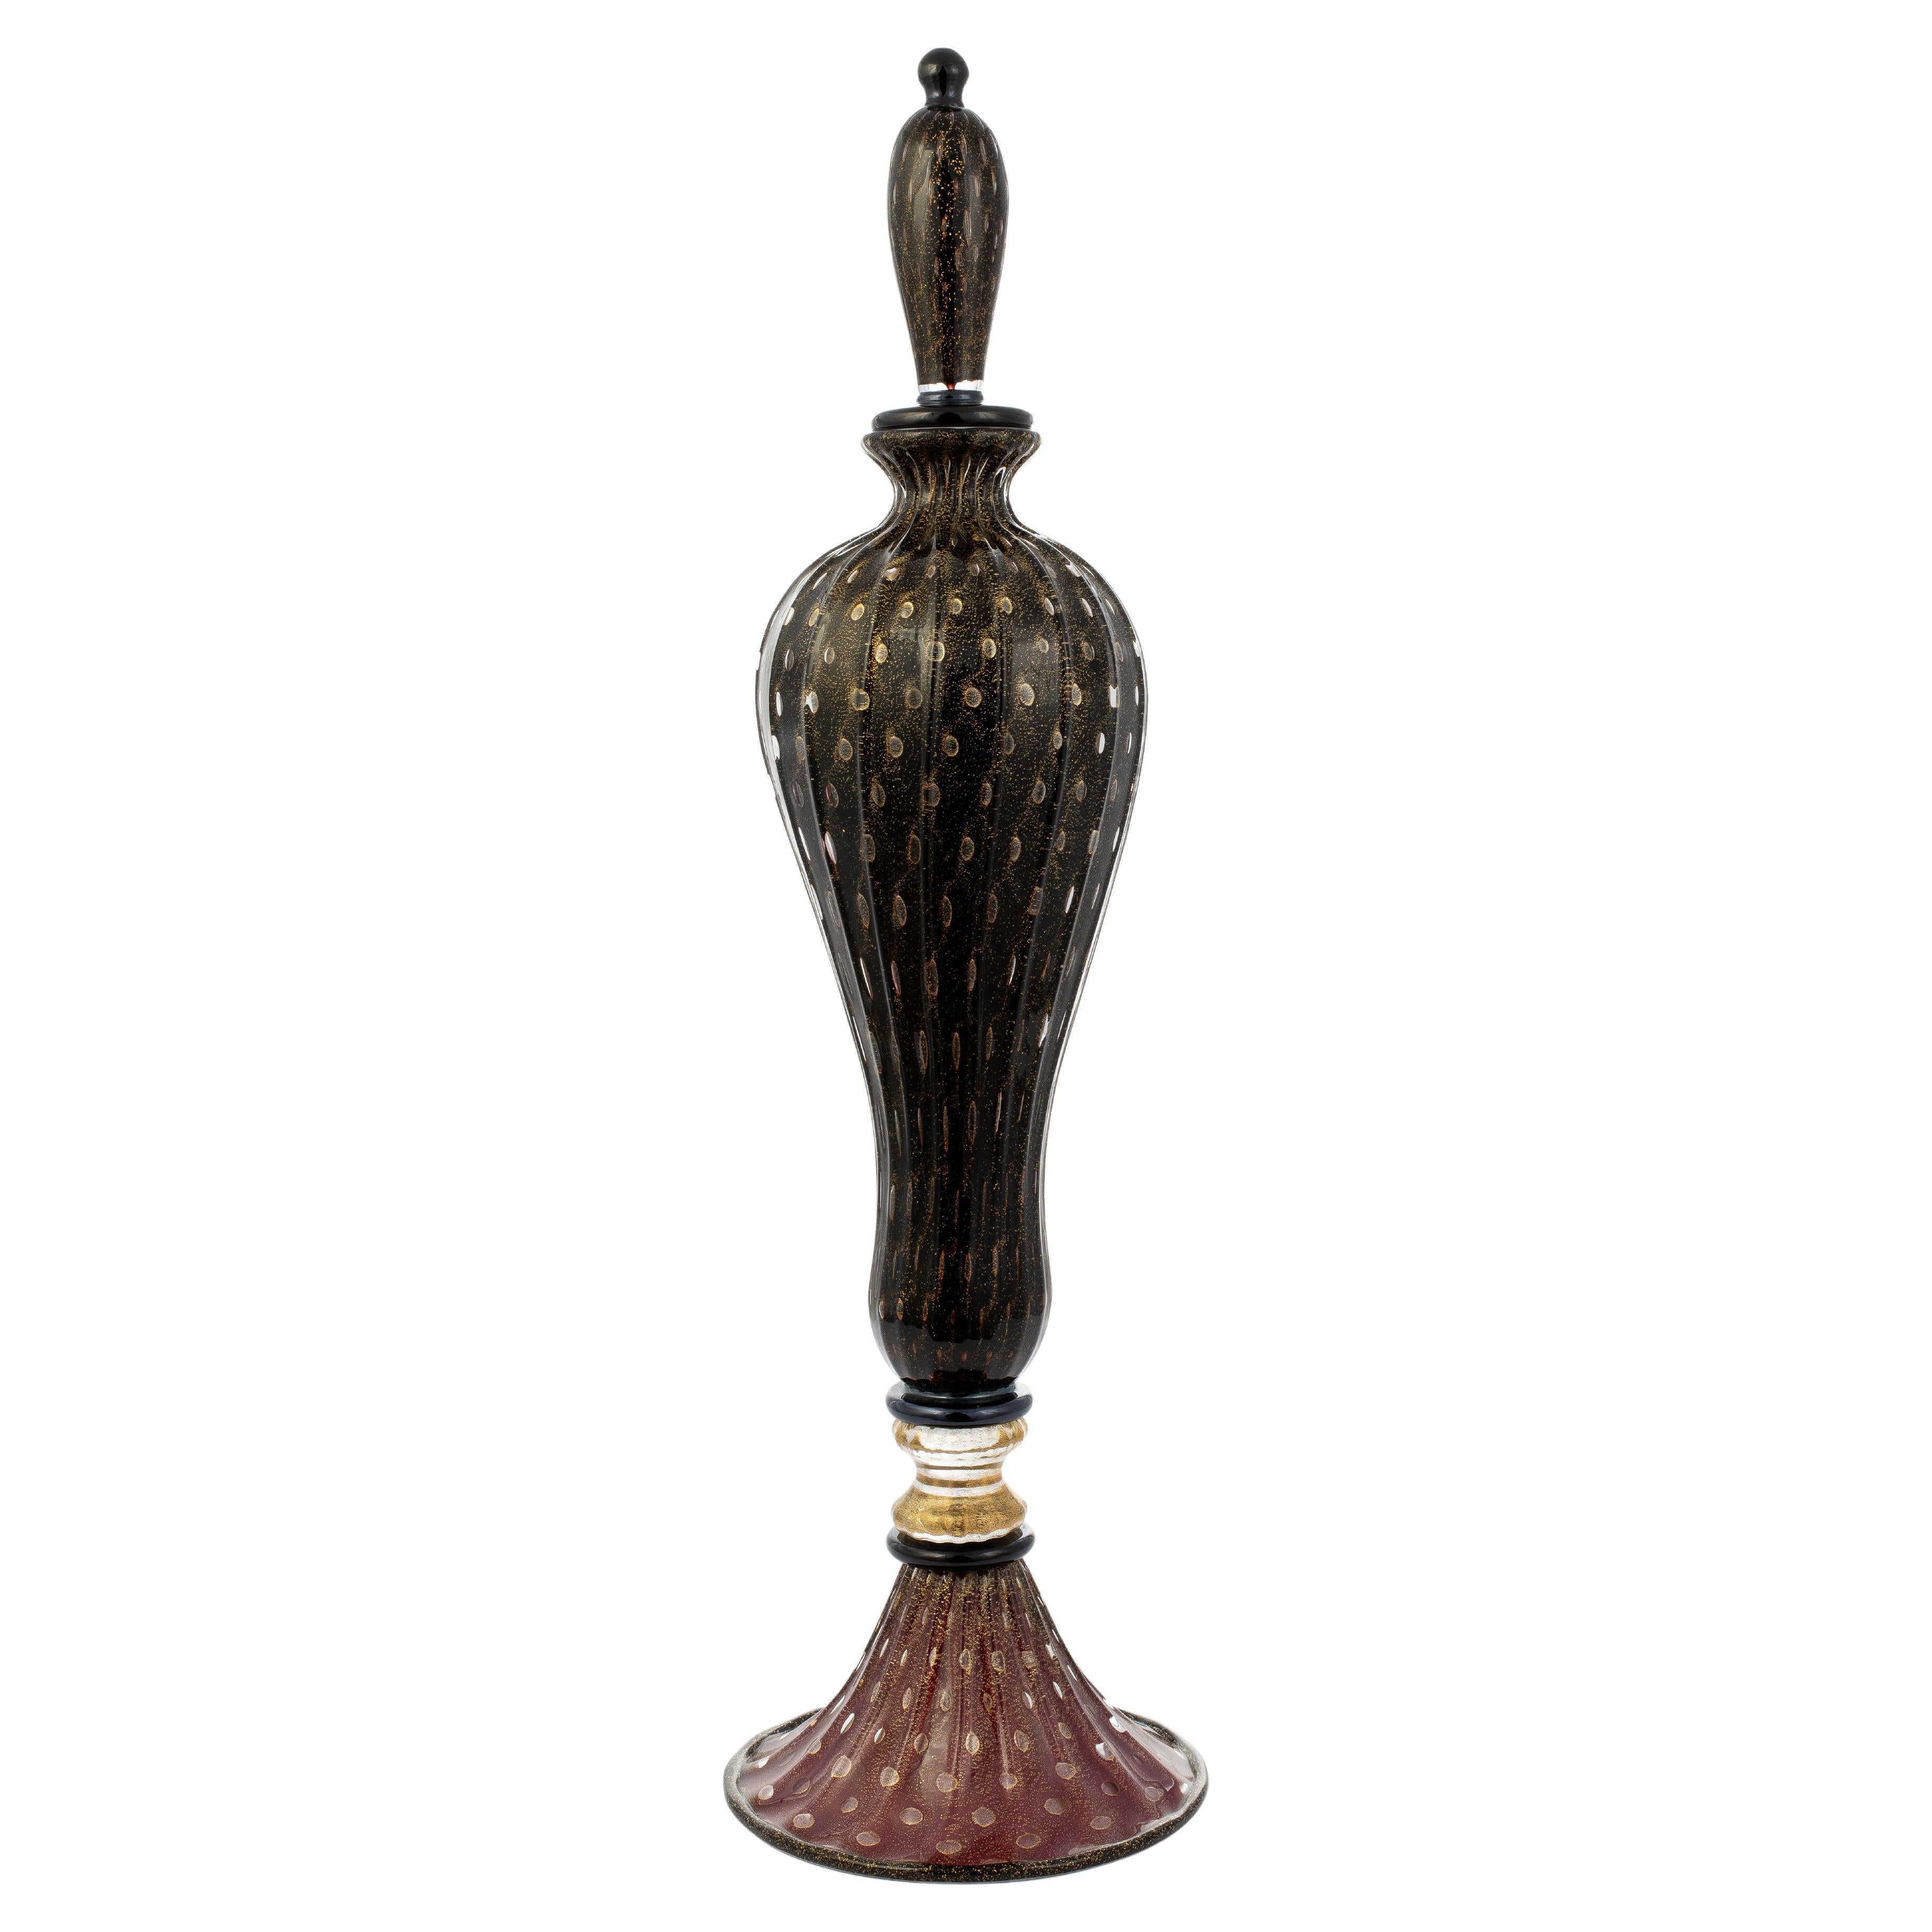 1295 Murano Hand Made Art Glass "Napoleone a Venezia" Bottle Vase Ltd For Sale